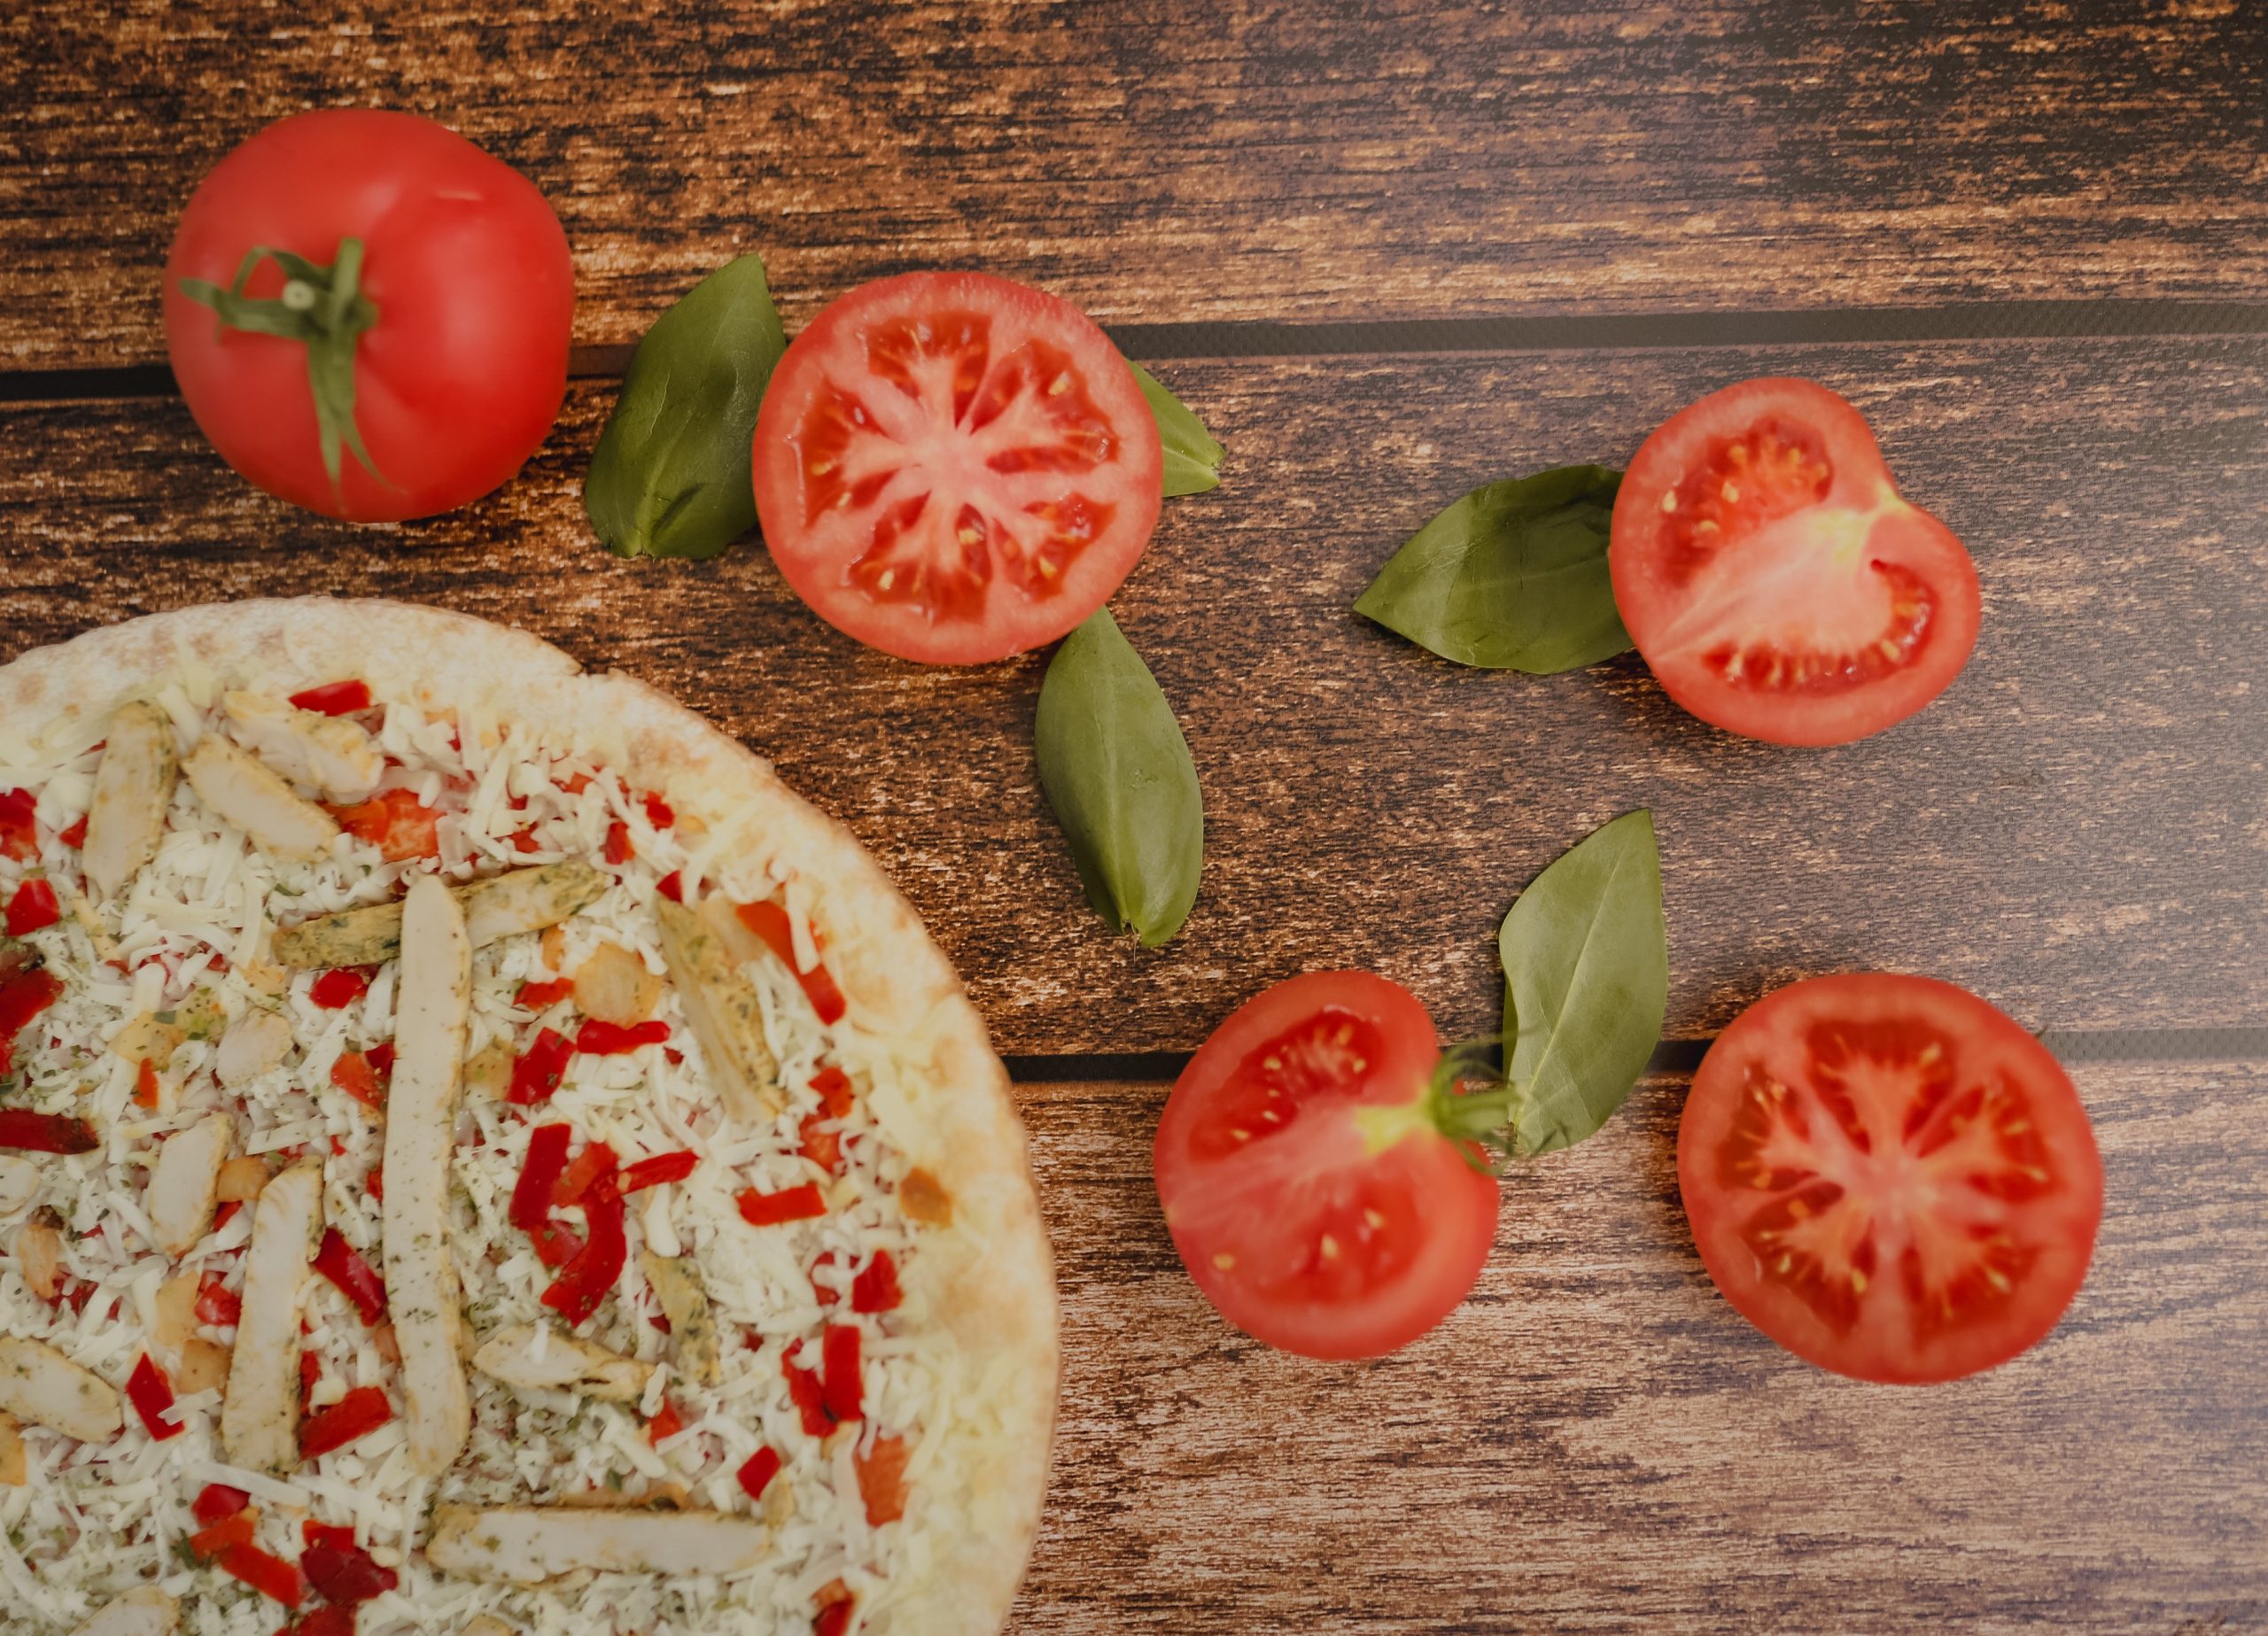 英国番茄贵翻天 意式餐厅改推“白披萨”